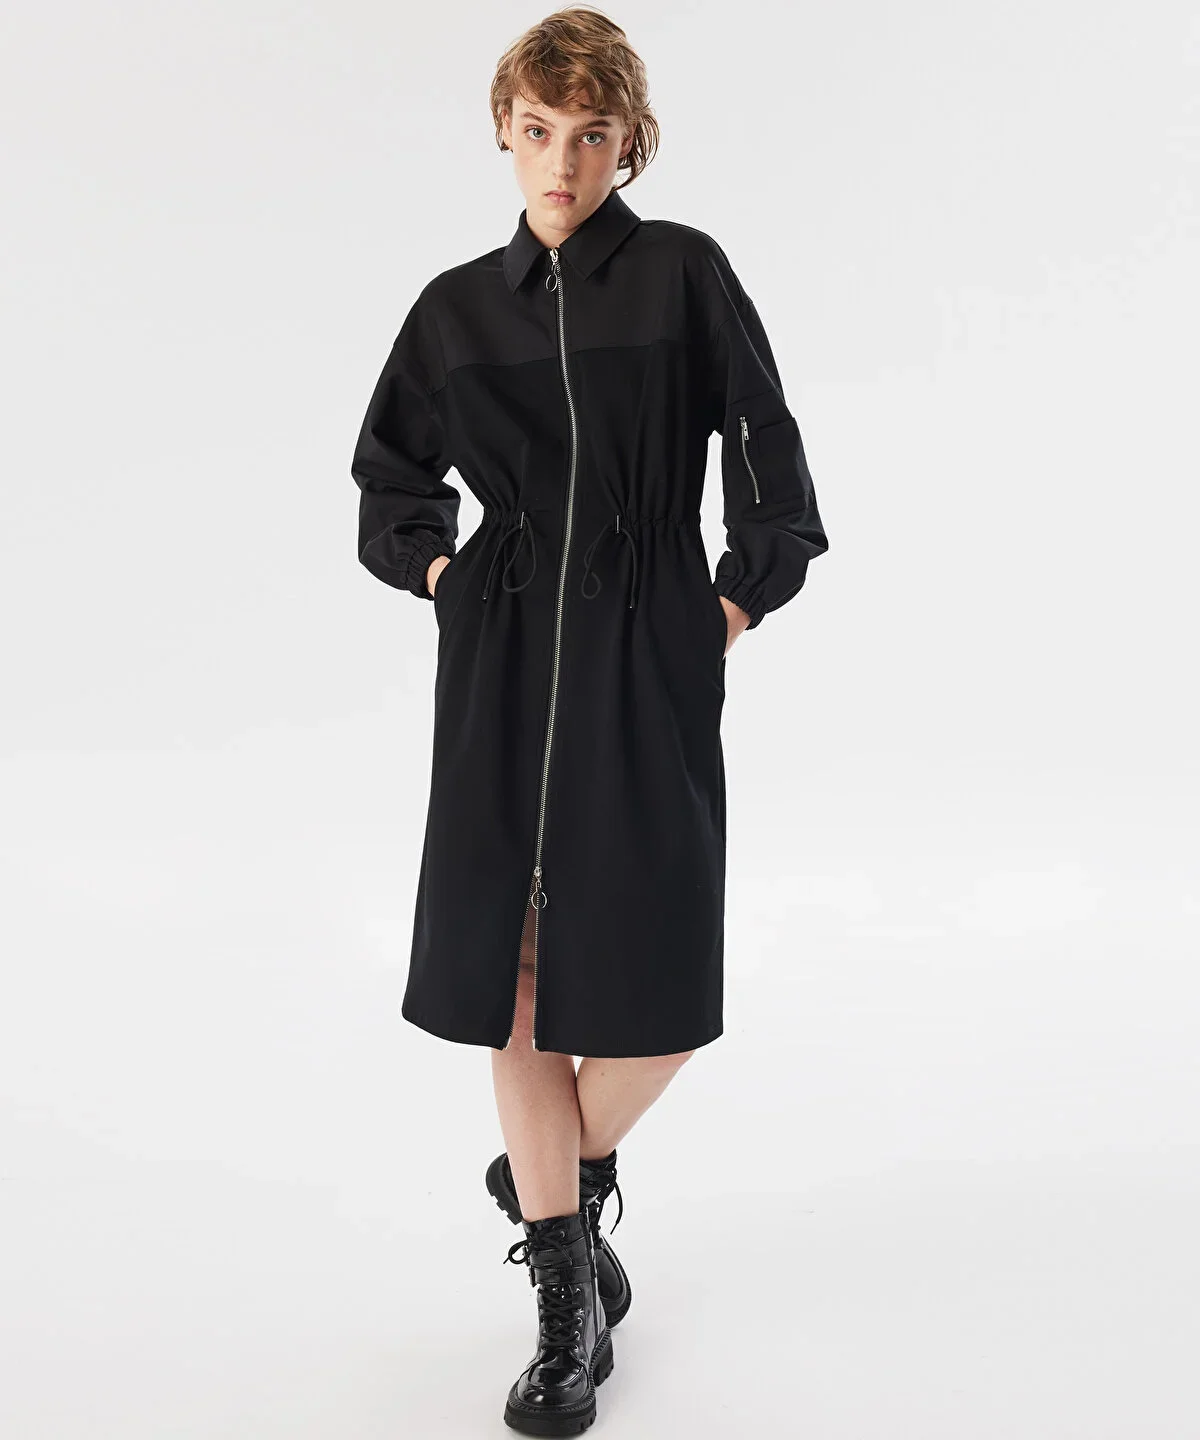 Kadın Kumaş Mix Midi Elbise - Siyah - 2